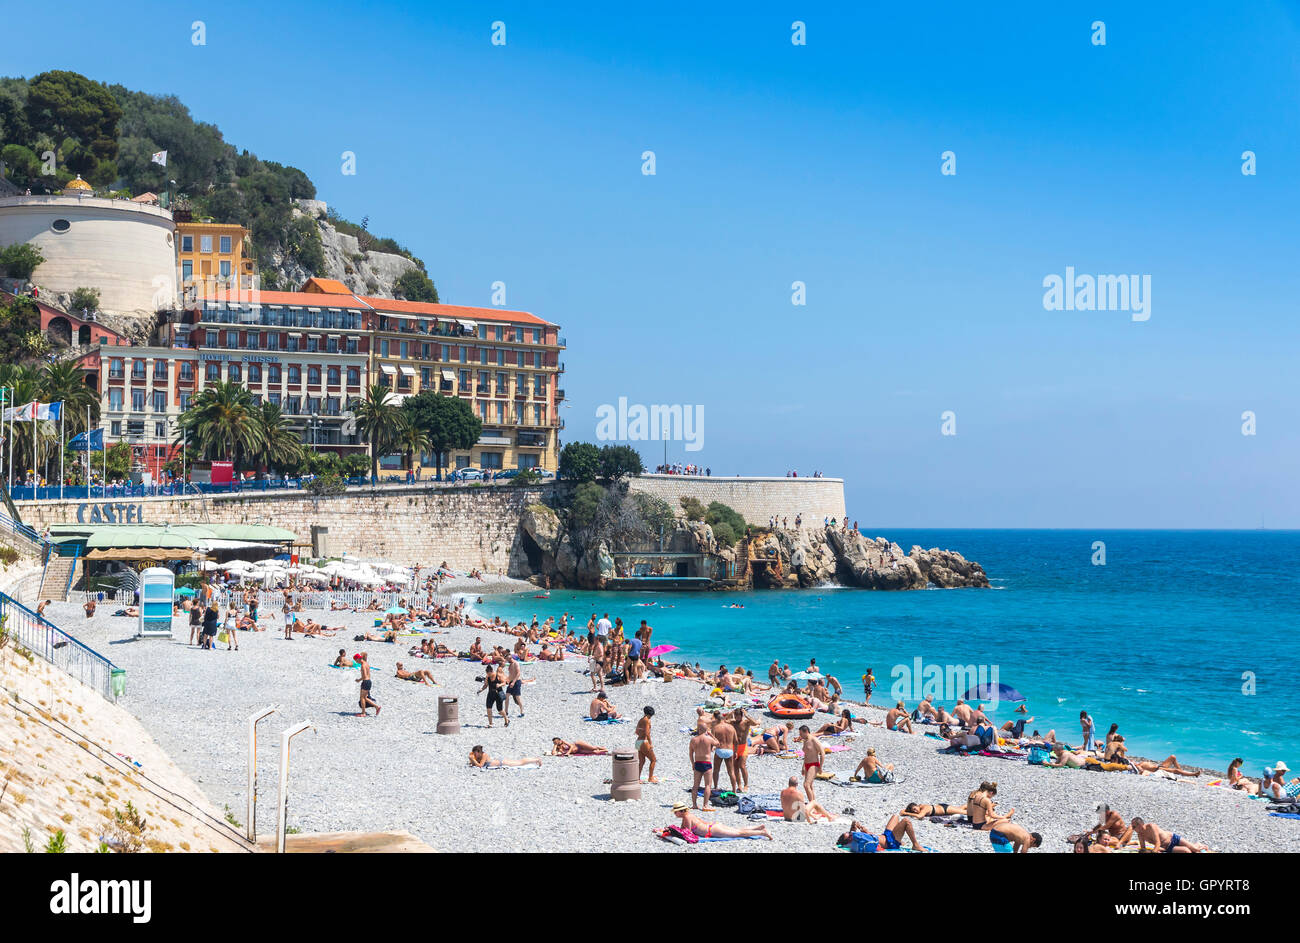 Kommunale Strand in der Nähe von Promenade des Anglais in Nizza, Côte d ' Azur, Mittelmeer, Frankreich Stockfoto